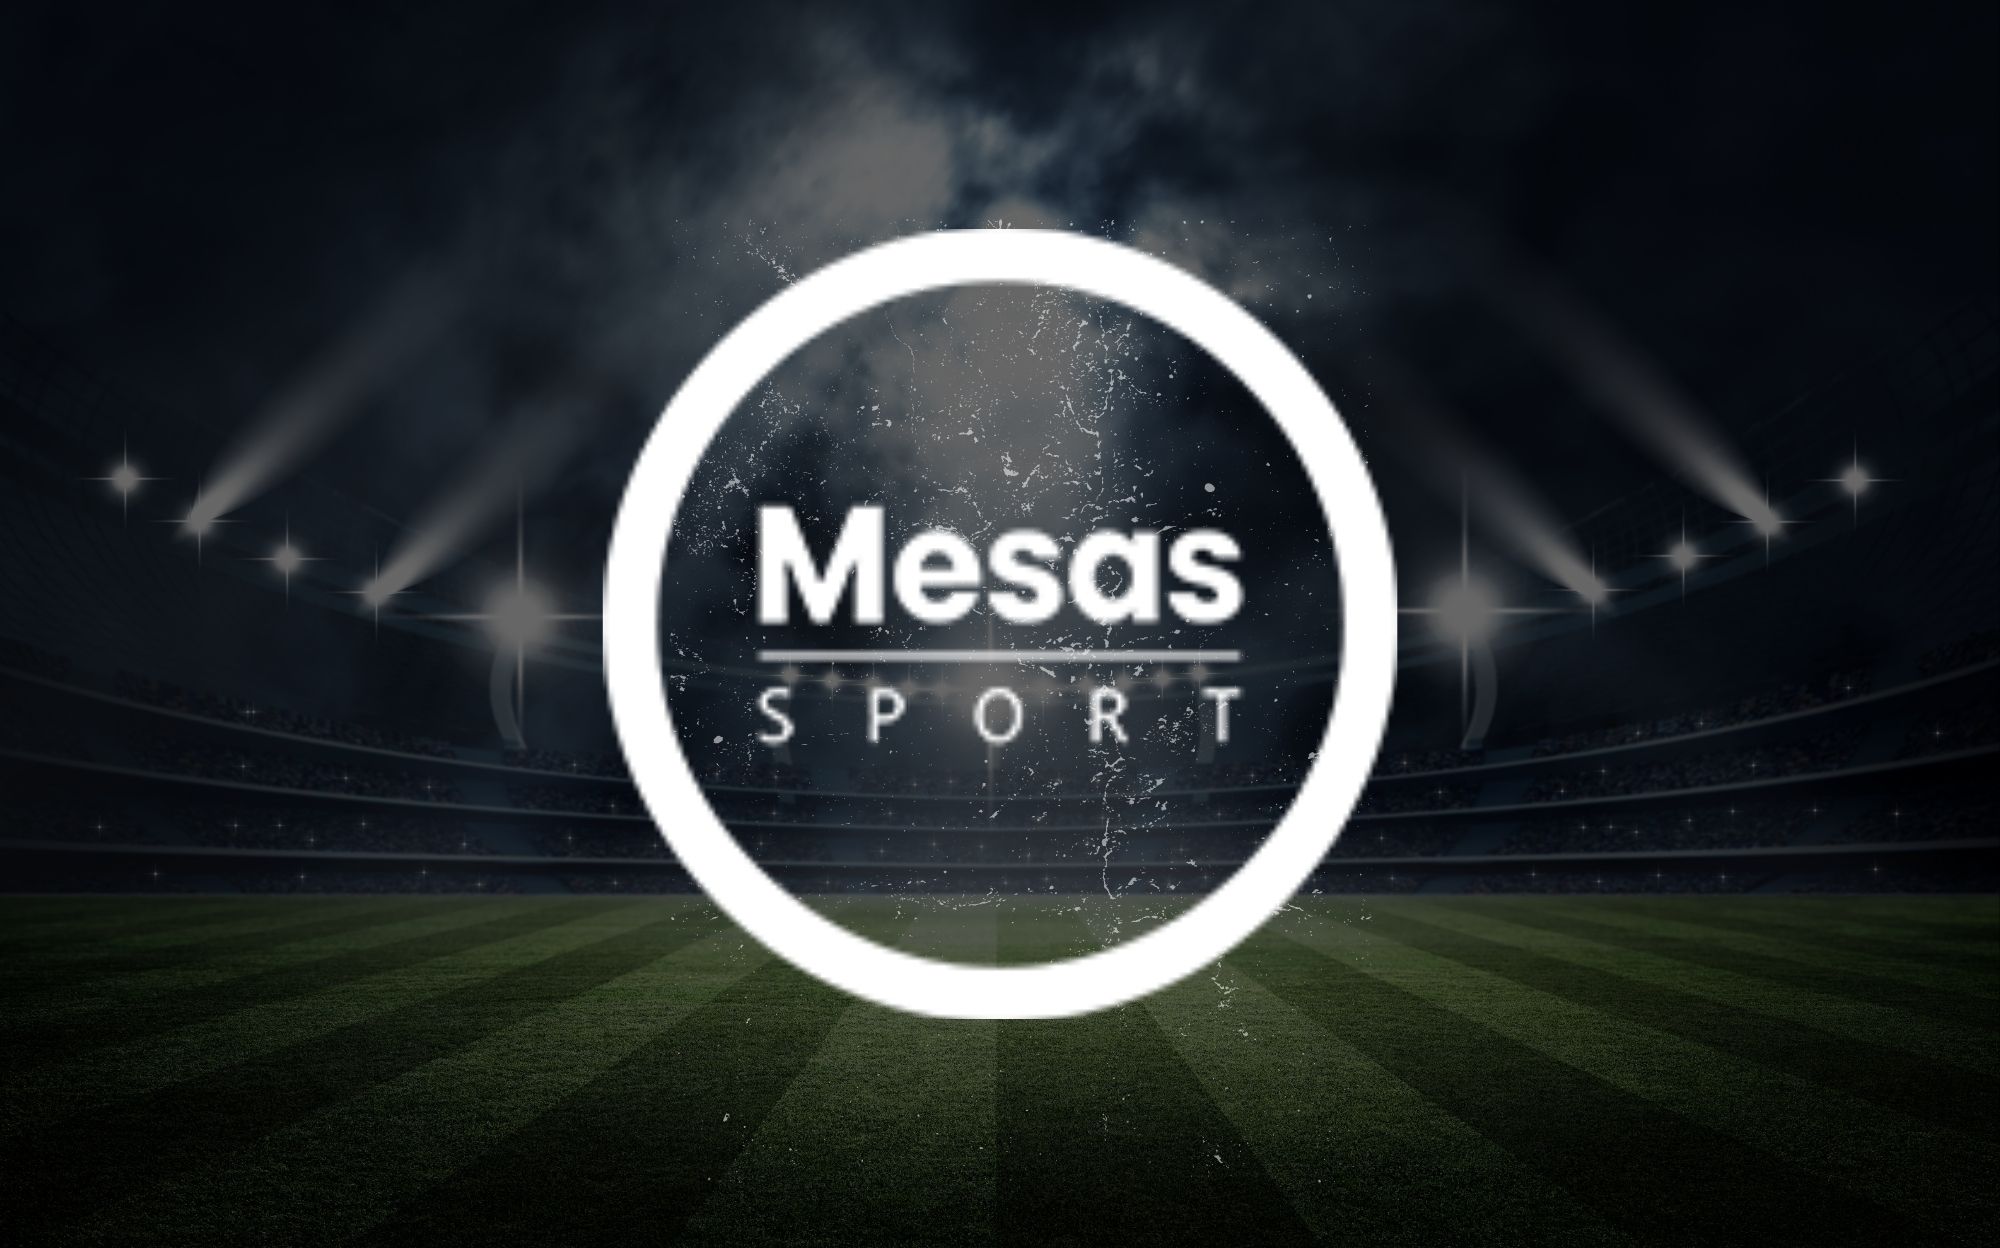 Imagen de Mesas Sport Agencia en la MLS